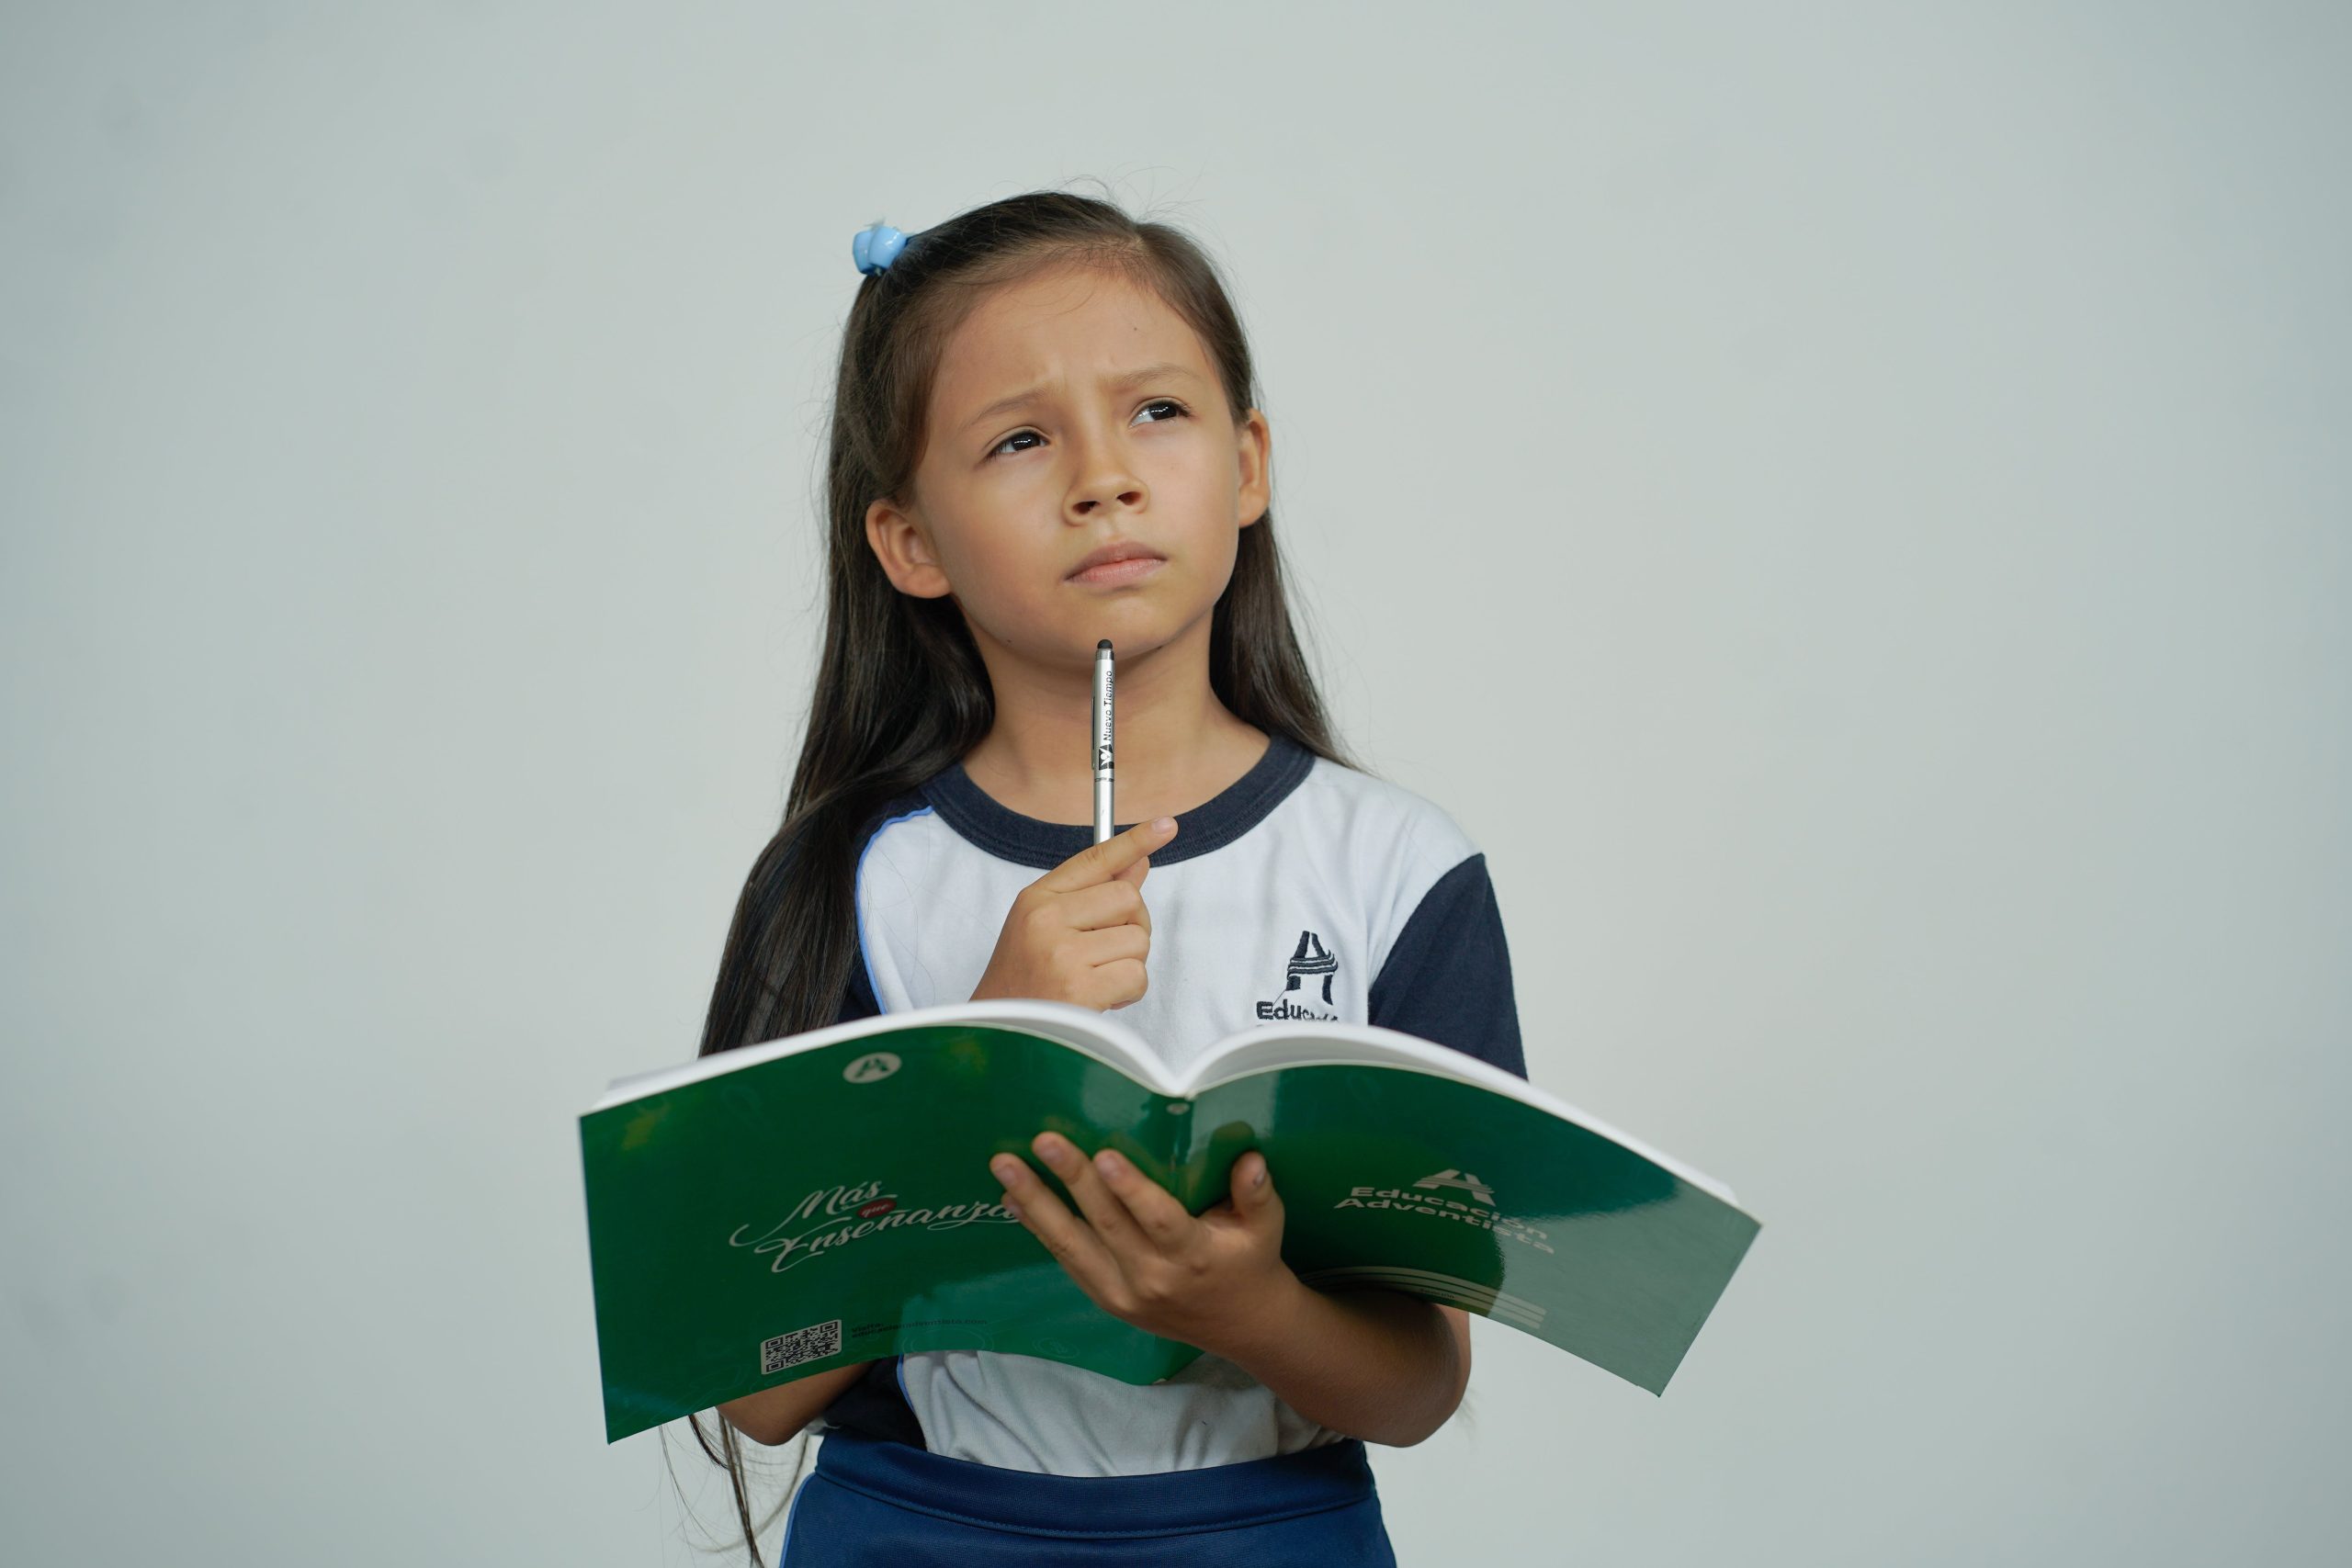 Dziewczynka w wieku szkolnym trzyma podręcznik do nauki języka angielskiego i zastanawia się.